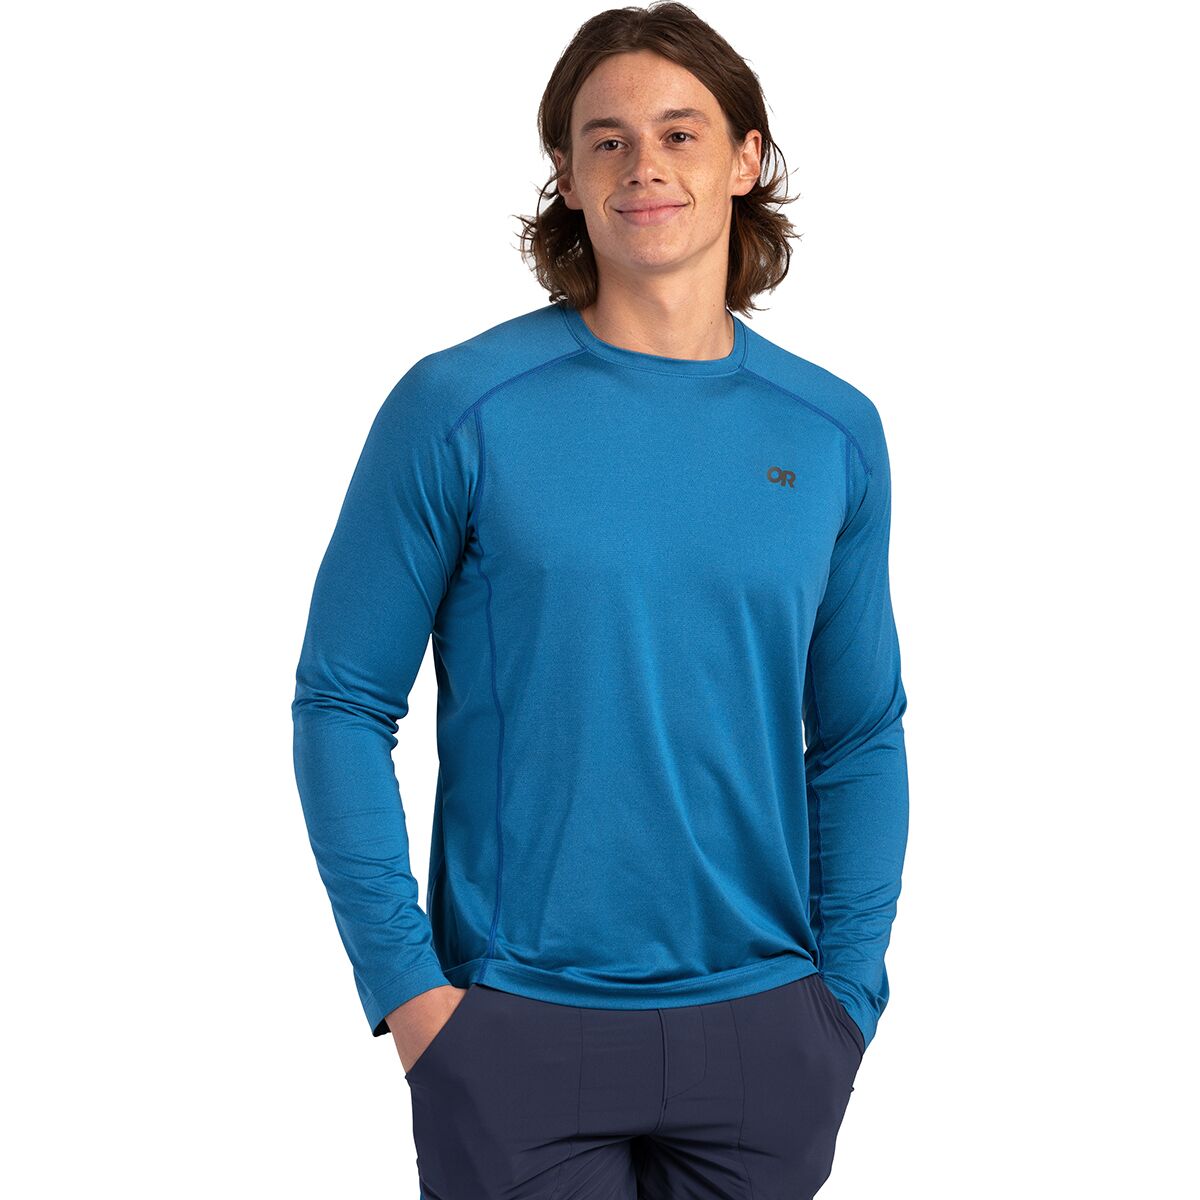 Argon Long-Sleeve T-Shirt - Men